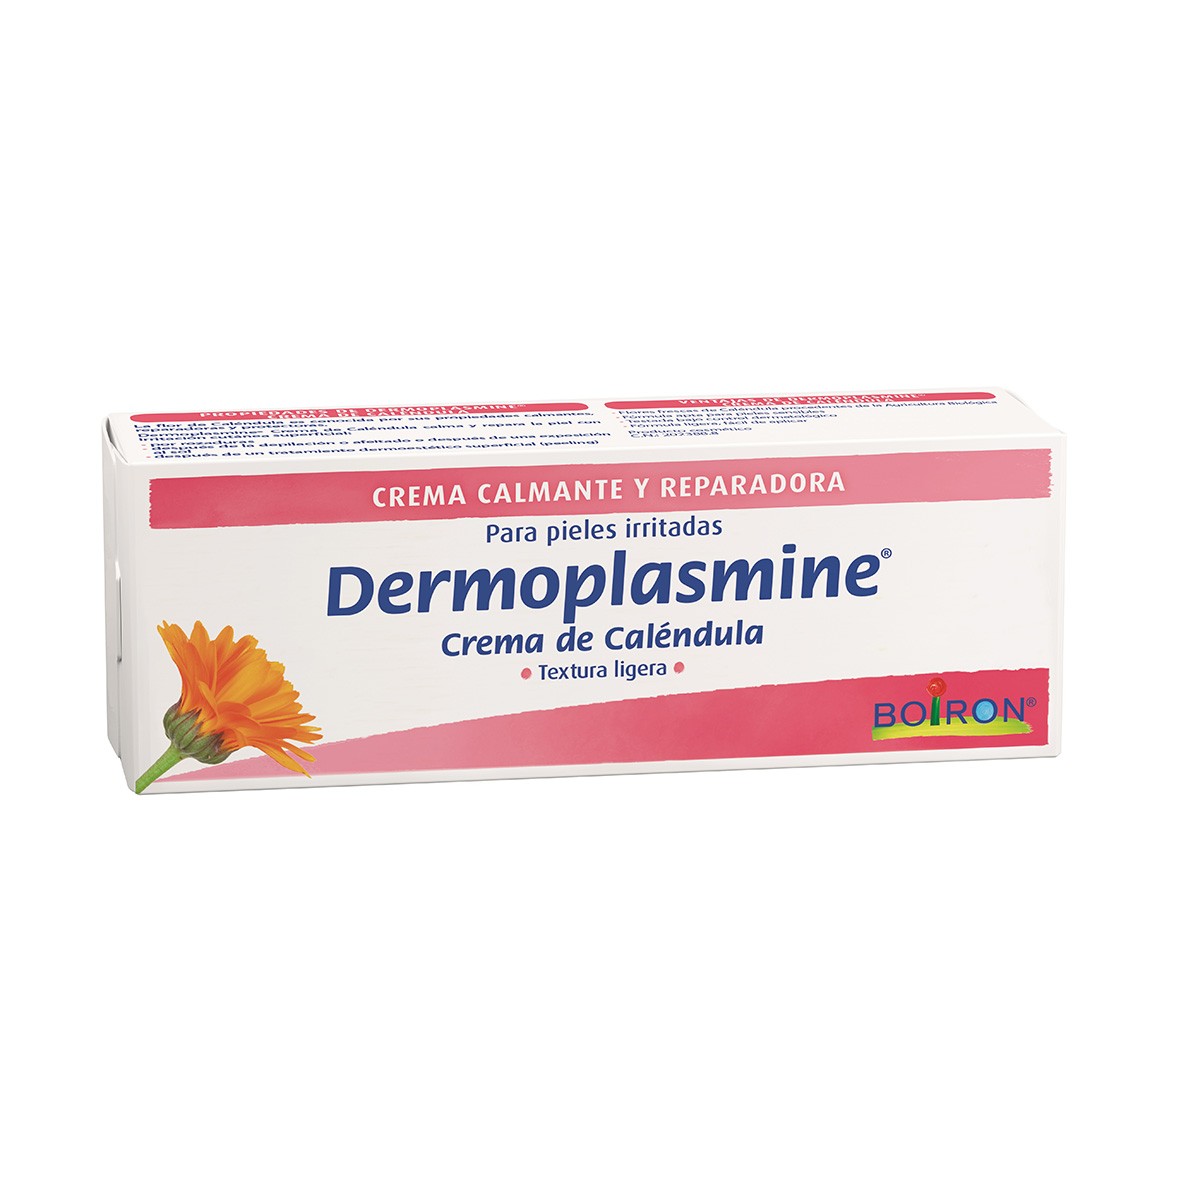 Dermoplasmine crema de caléndula calma y repara la piel irritada 70ml